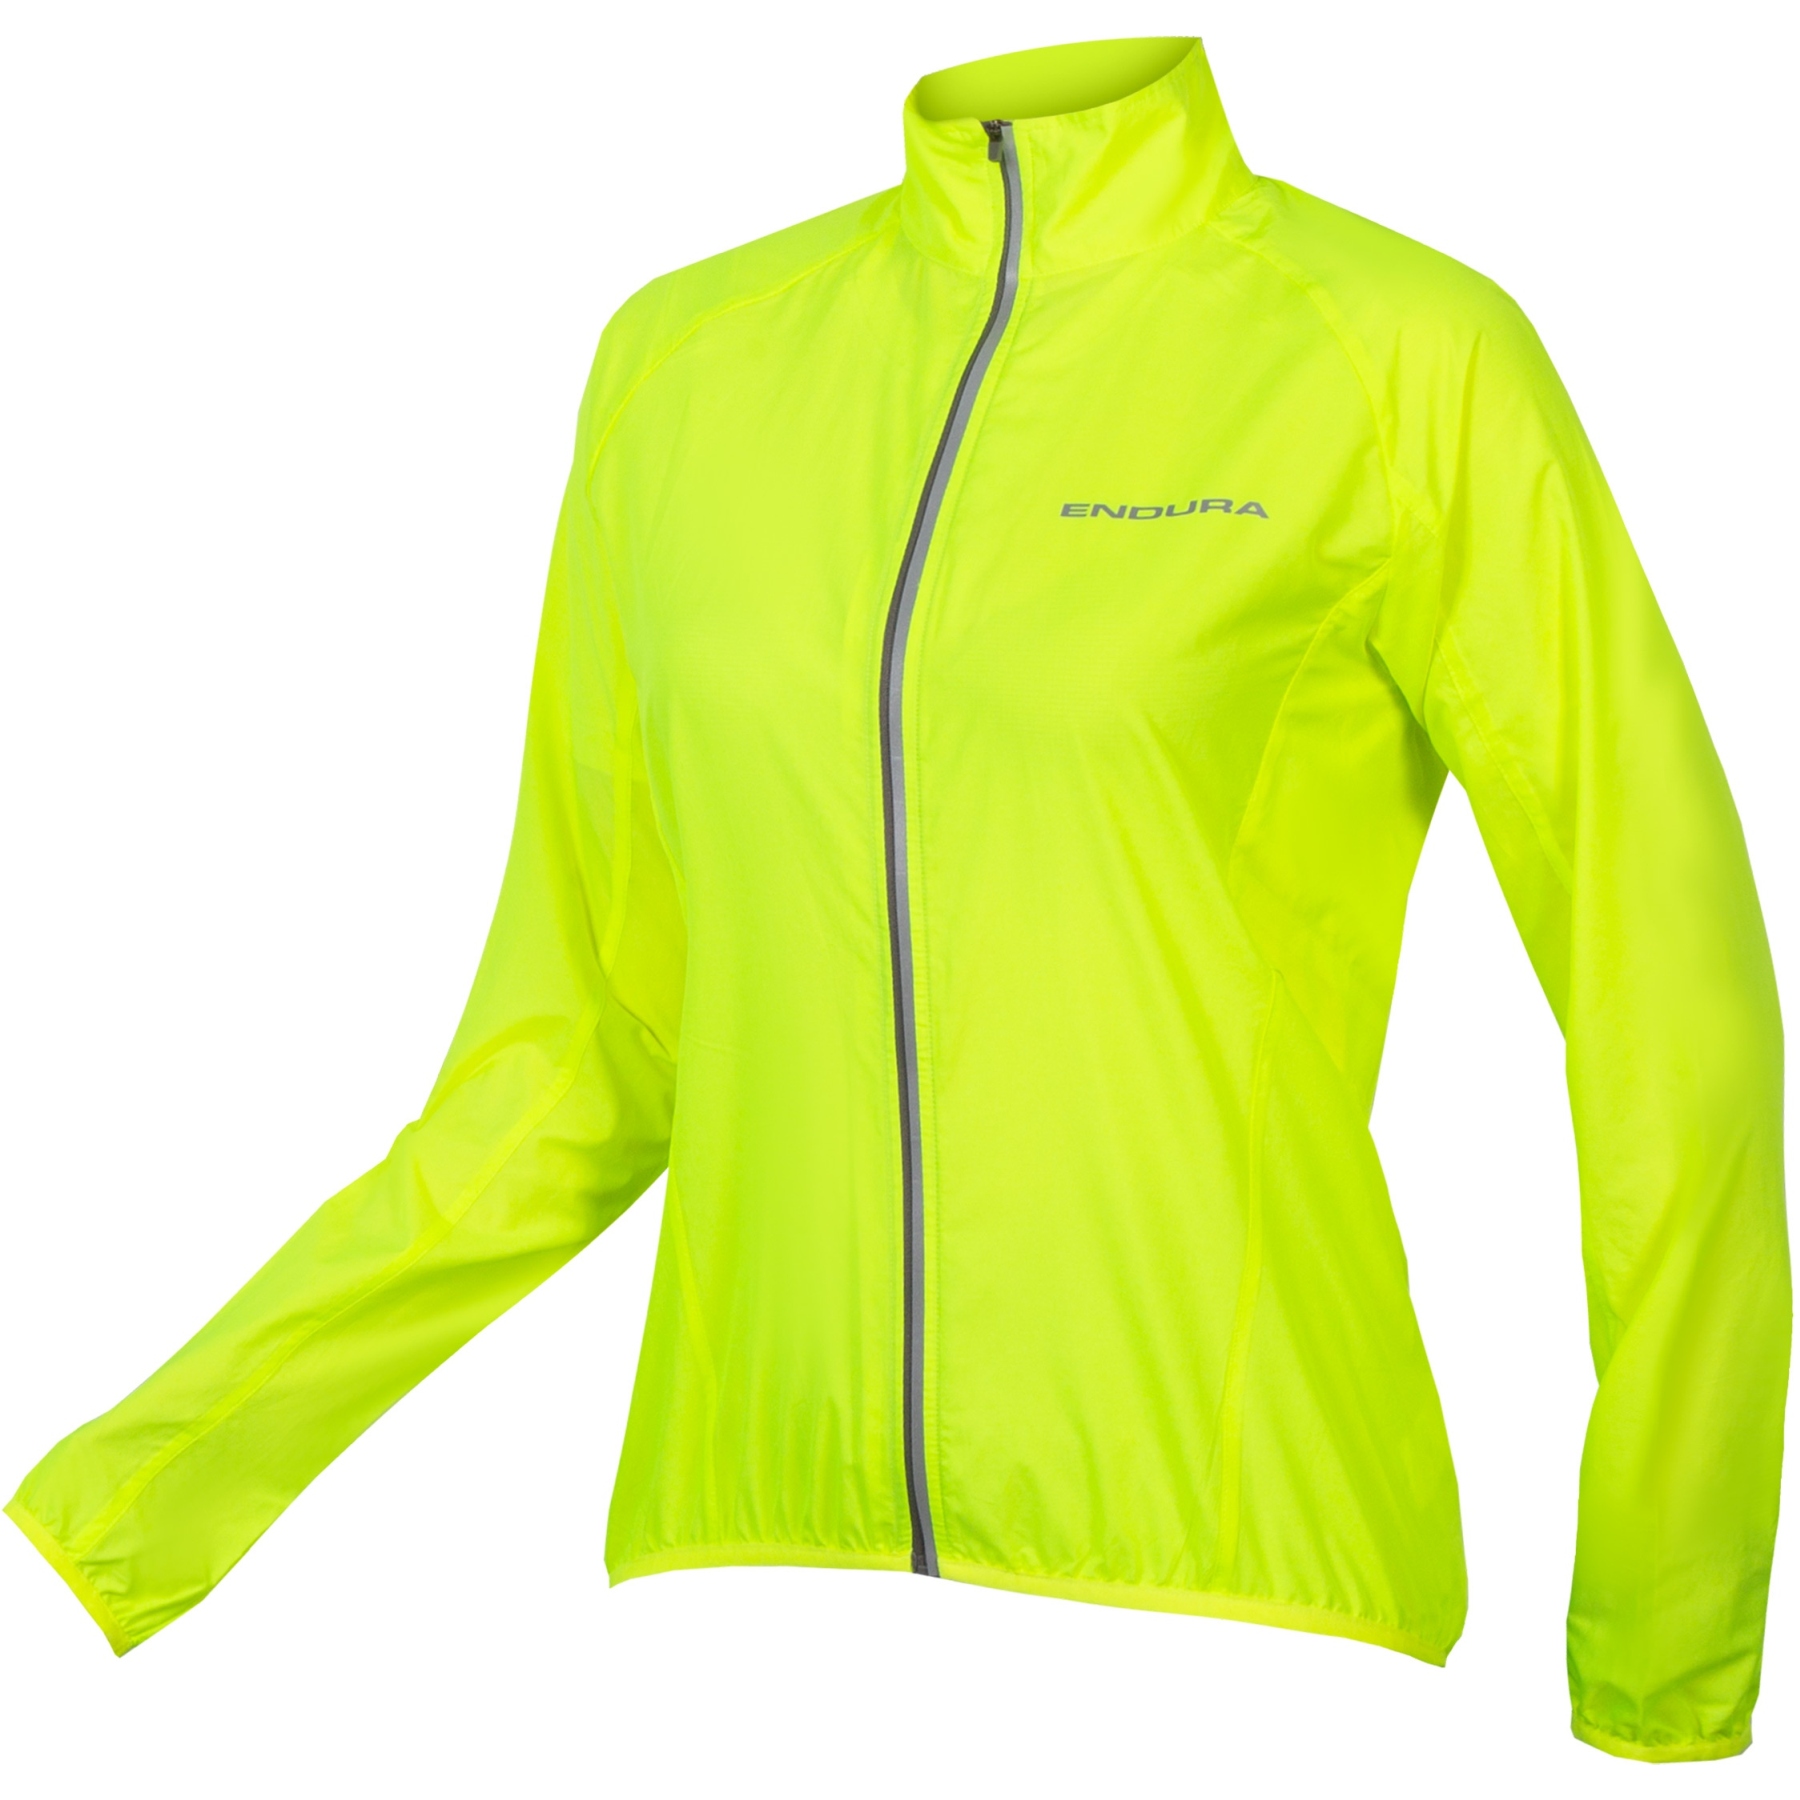 Produktbild von Endura Pakajak Jacke Damen - neon-gelb